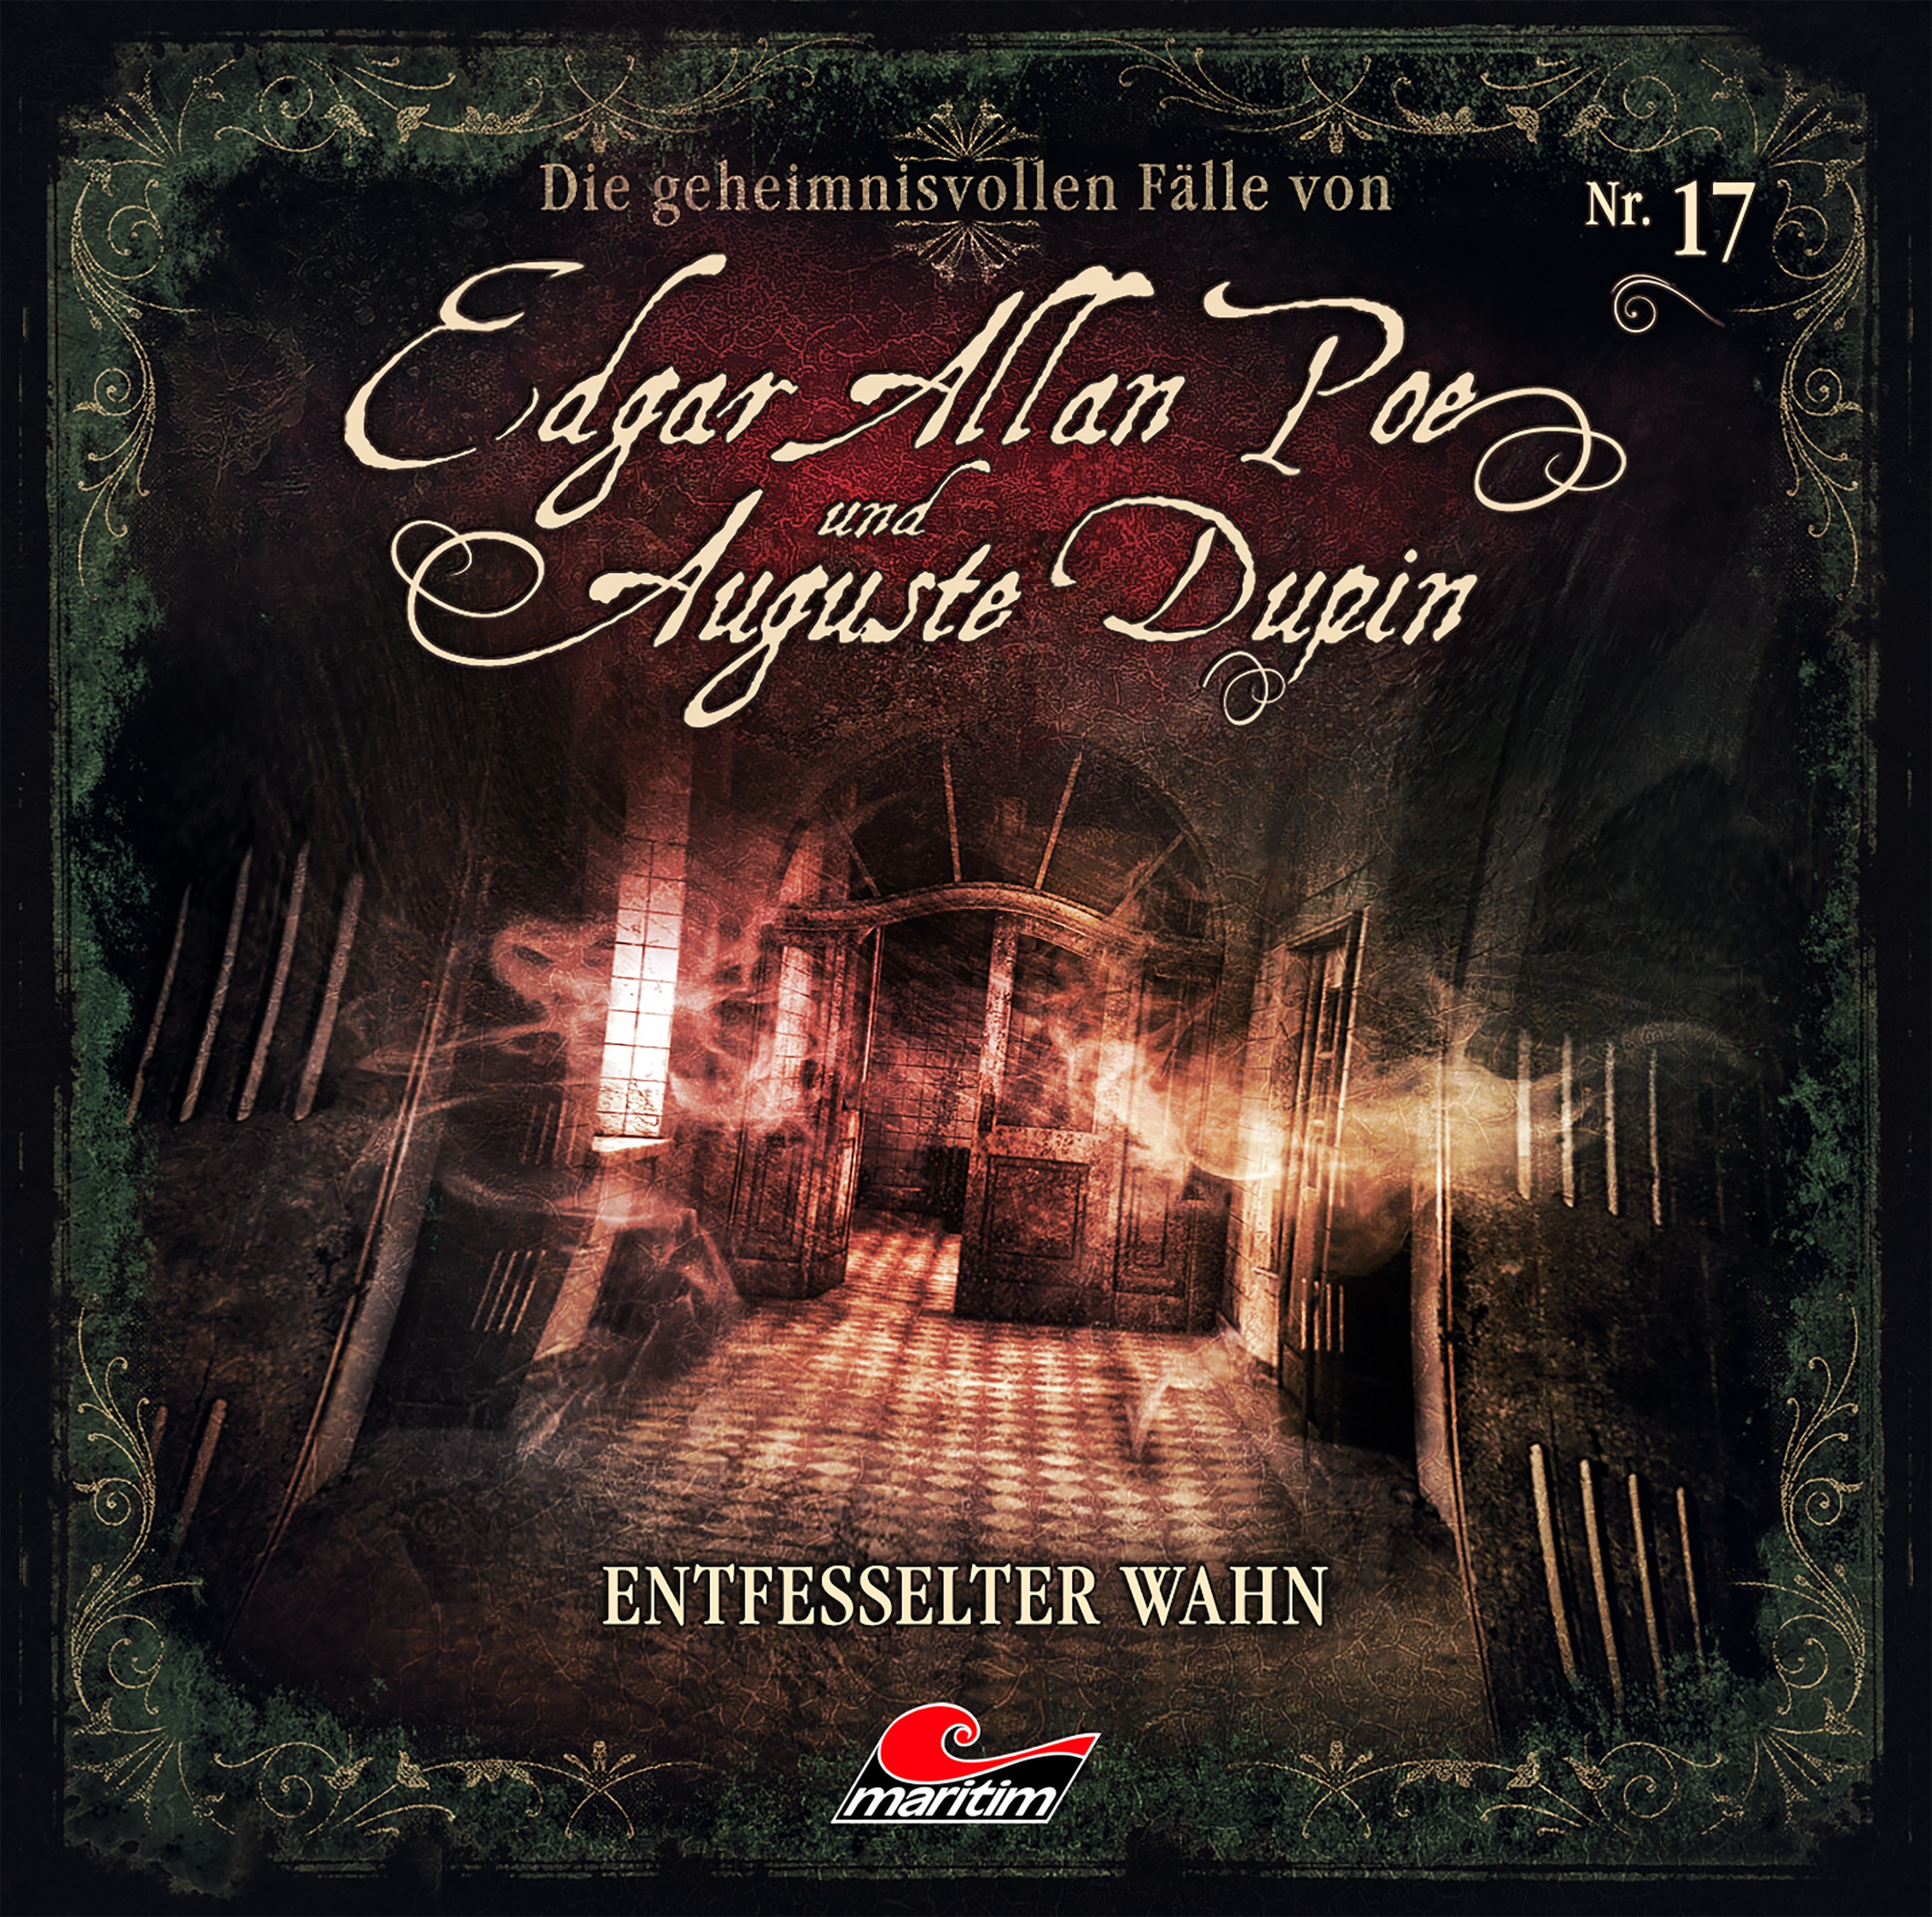 Edgar Allan Poe und Auguste Dupin - Folge 17: Entfesselter Wahn